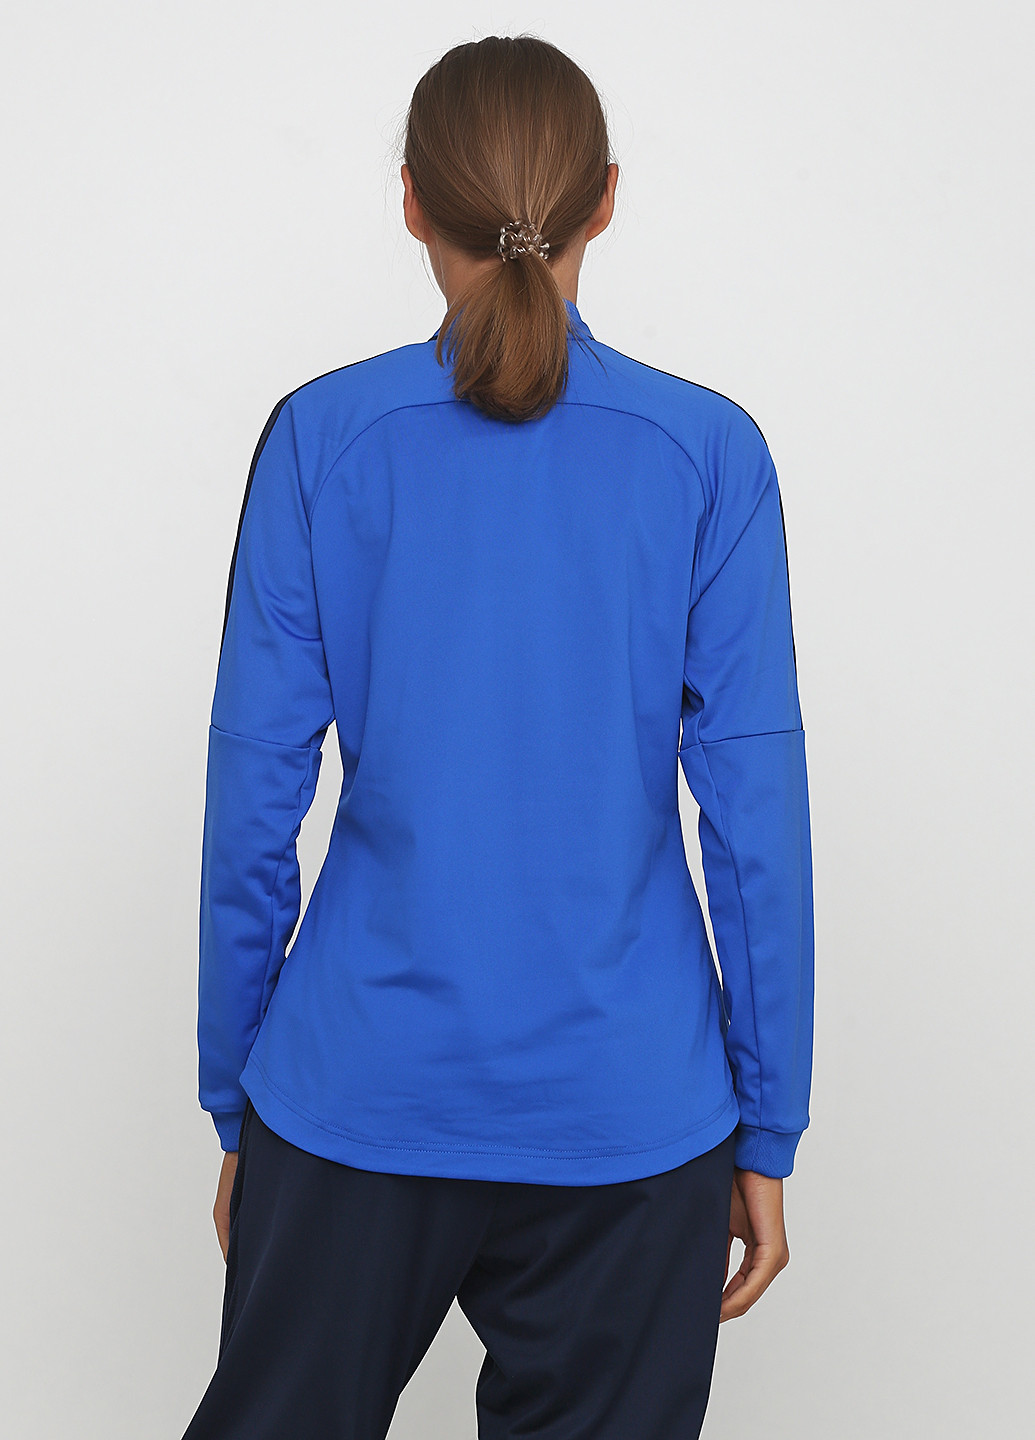 Олімпійка Nike knit track jacket w o m e n ’ s a c a d e m y 1 8 (187143600)